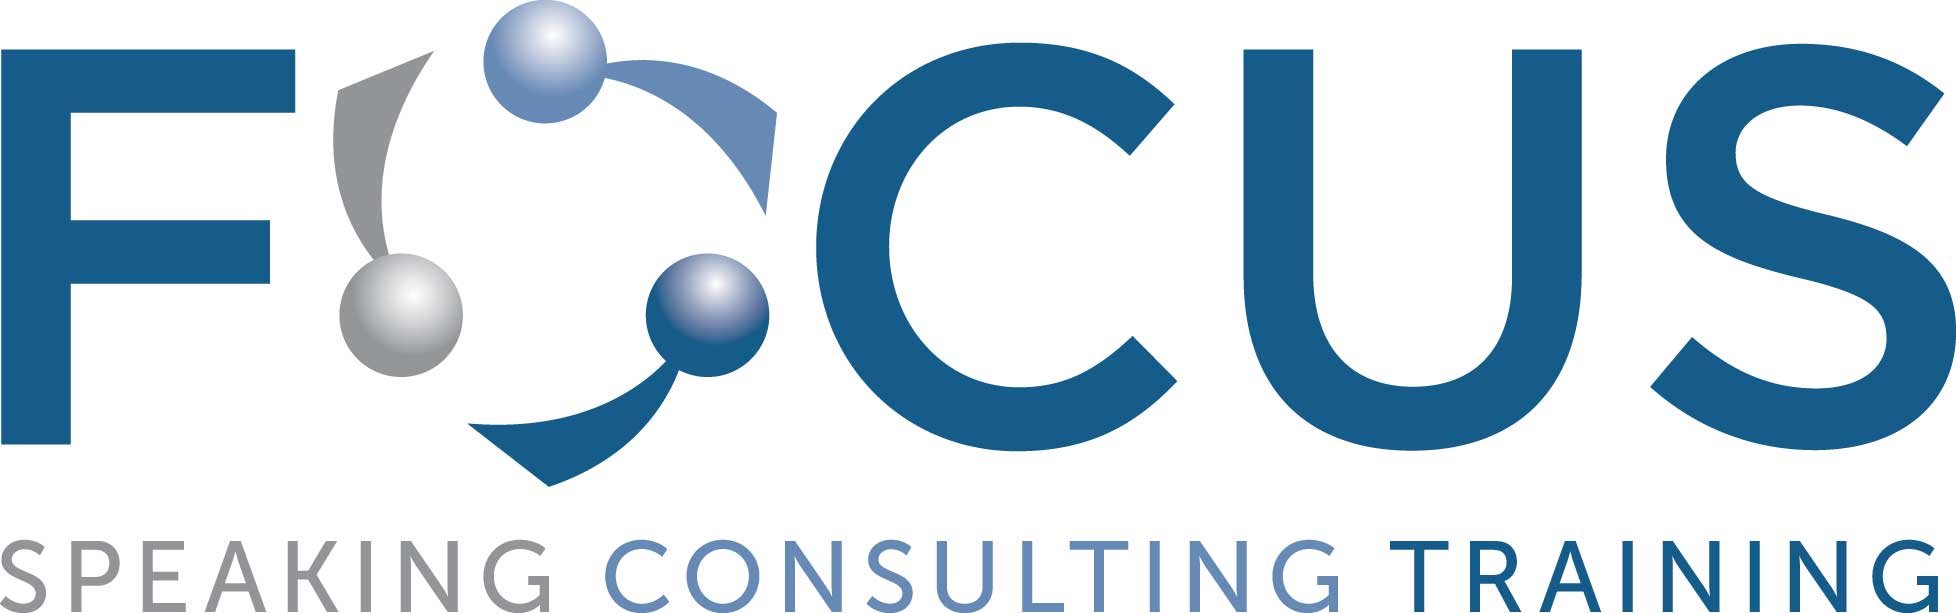 FOCUS traning logo